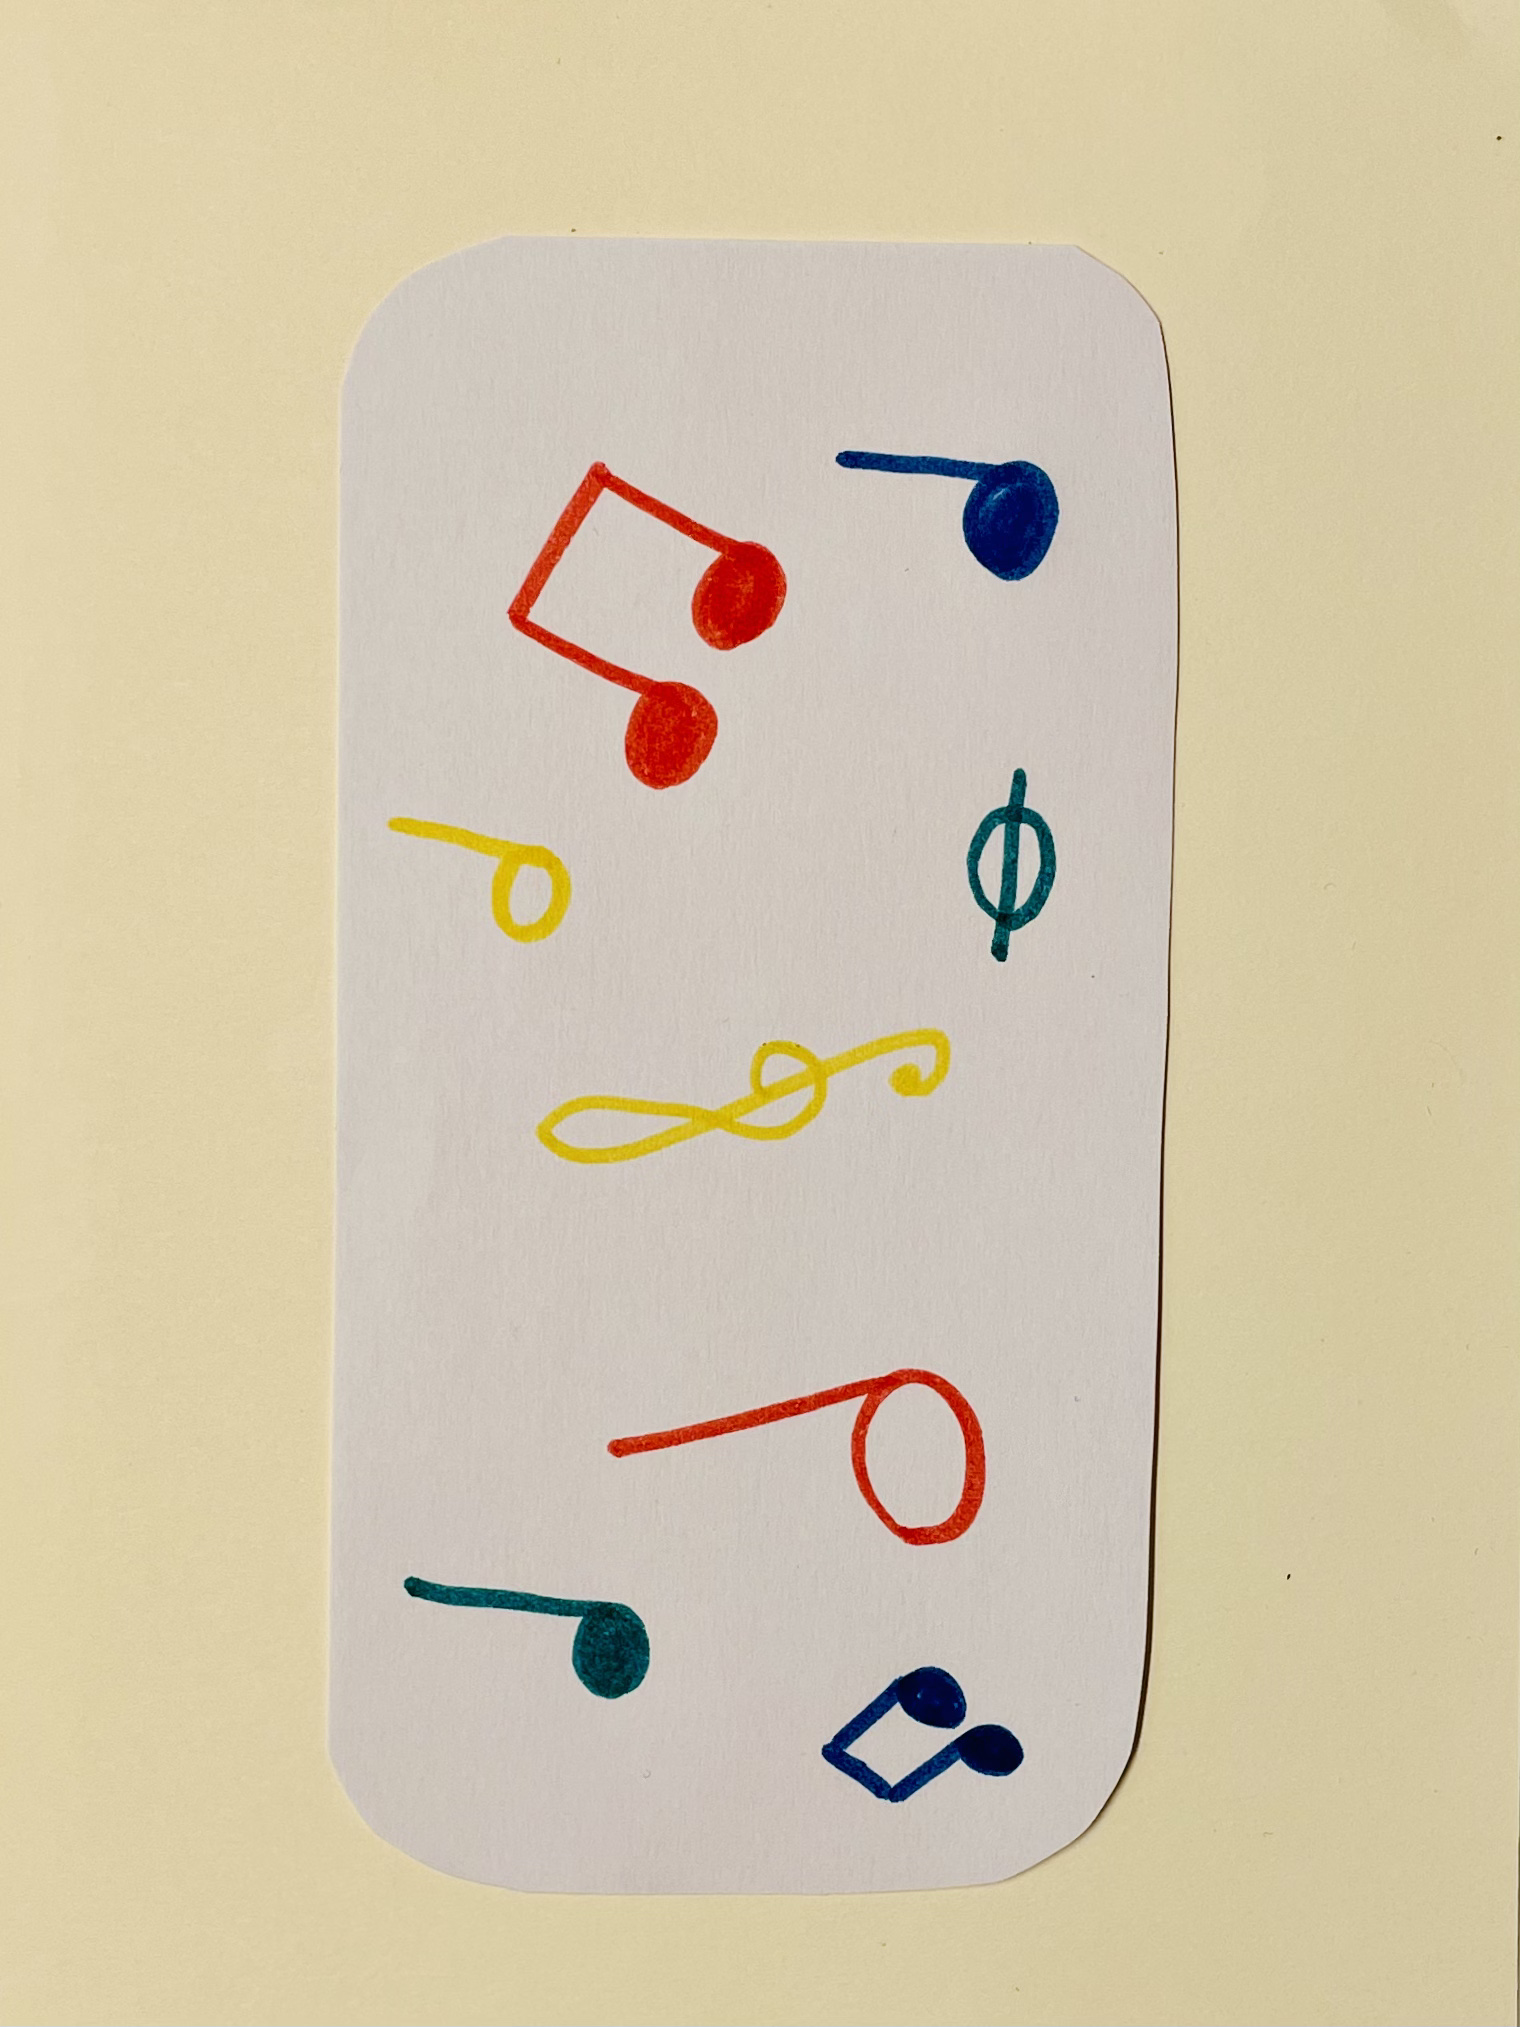 Bild zum Schritt 3 für das Bastel- und DIY-Abenteuer für Kinder: 'Gestaltet ein Einlegeblatt in der Größe eurer Blechdose. Dazu schneidet...'